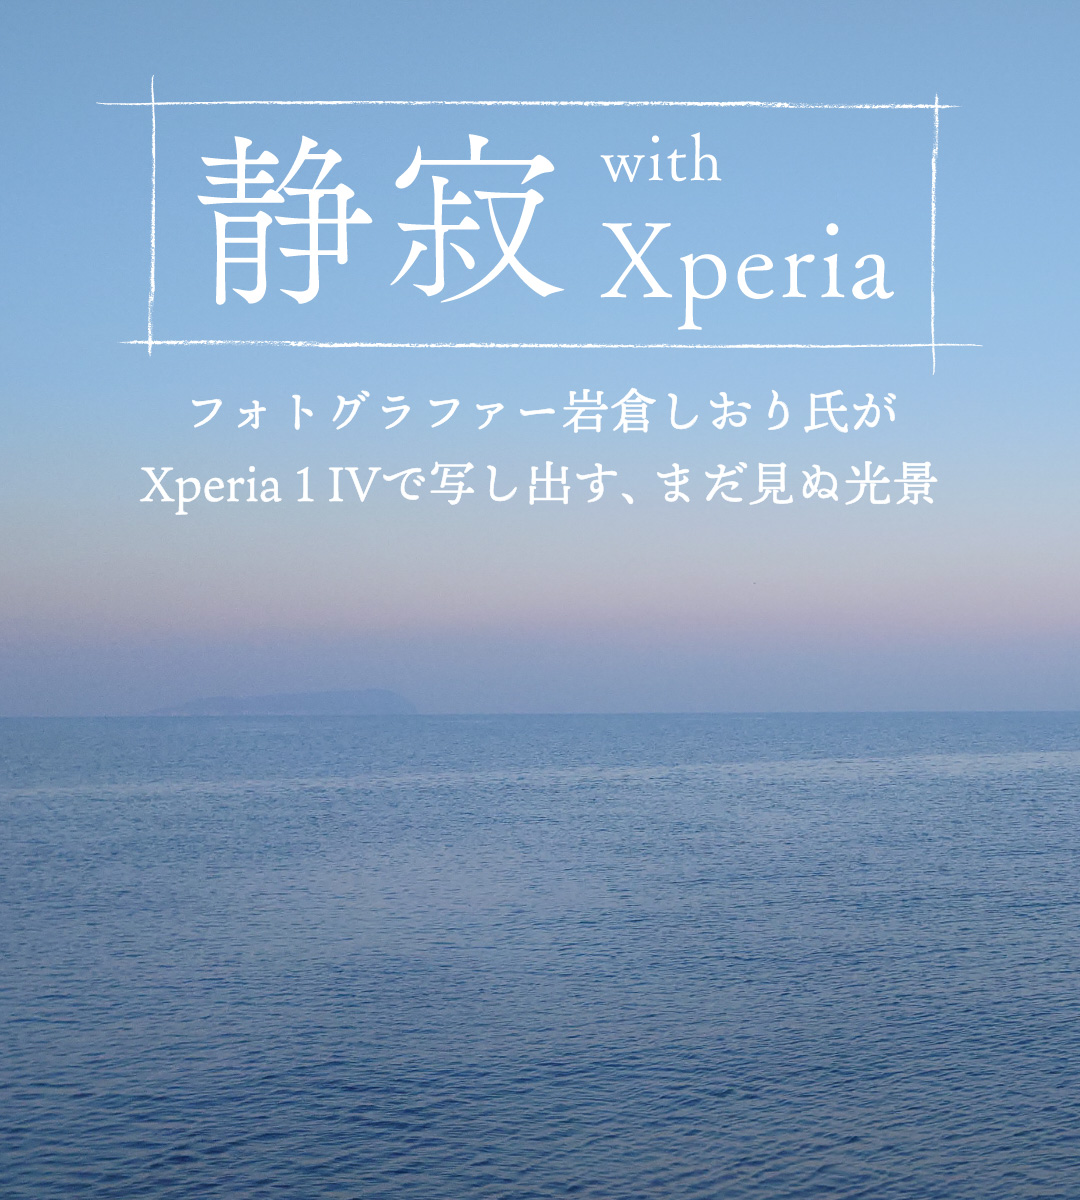 静寂 with Xperia フォトグラファー岩倉しおり氏がXperia 1 IVで写し出す、まだ見ぬ光景